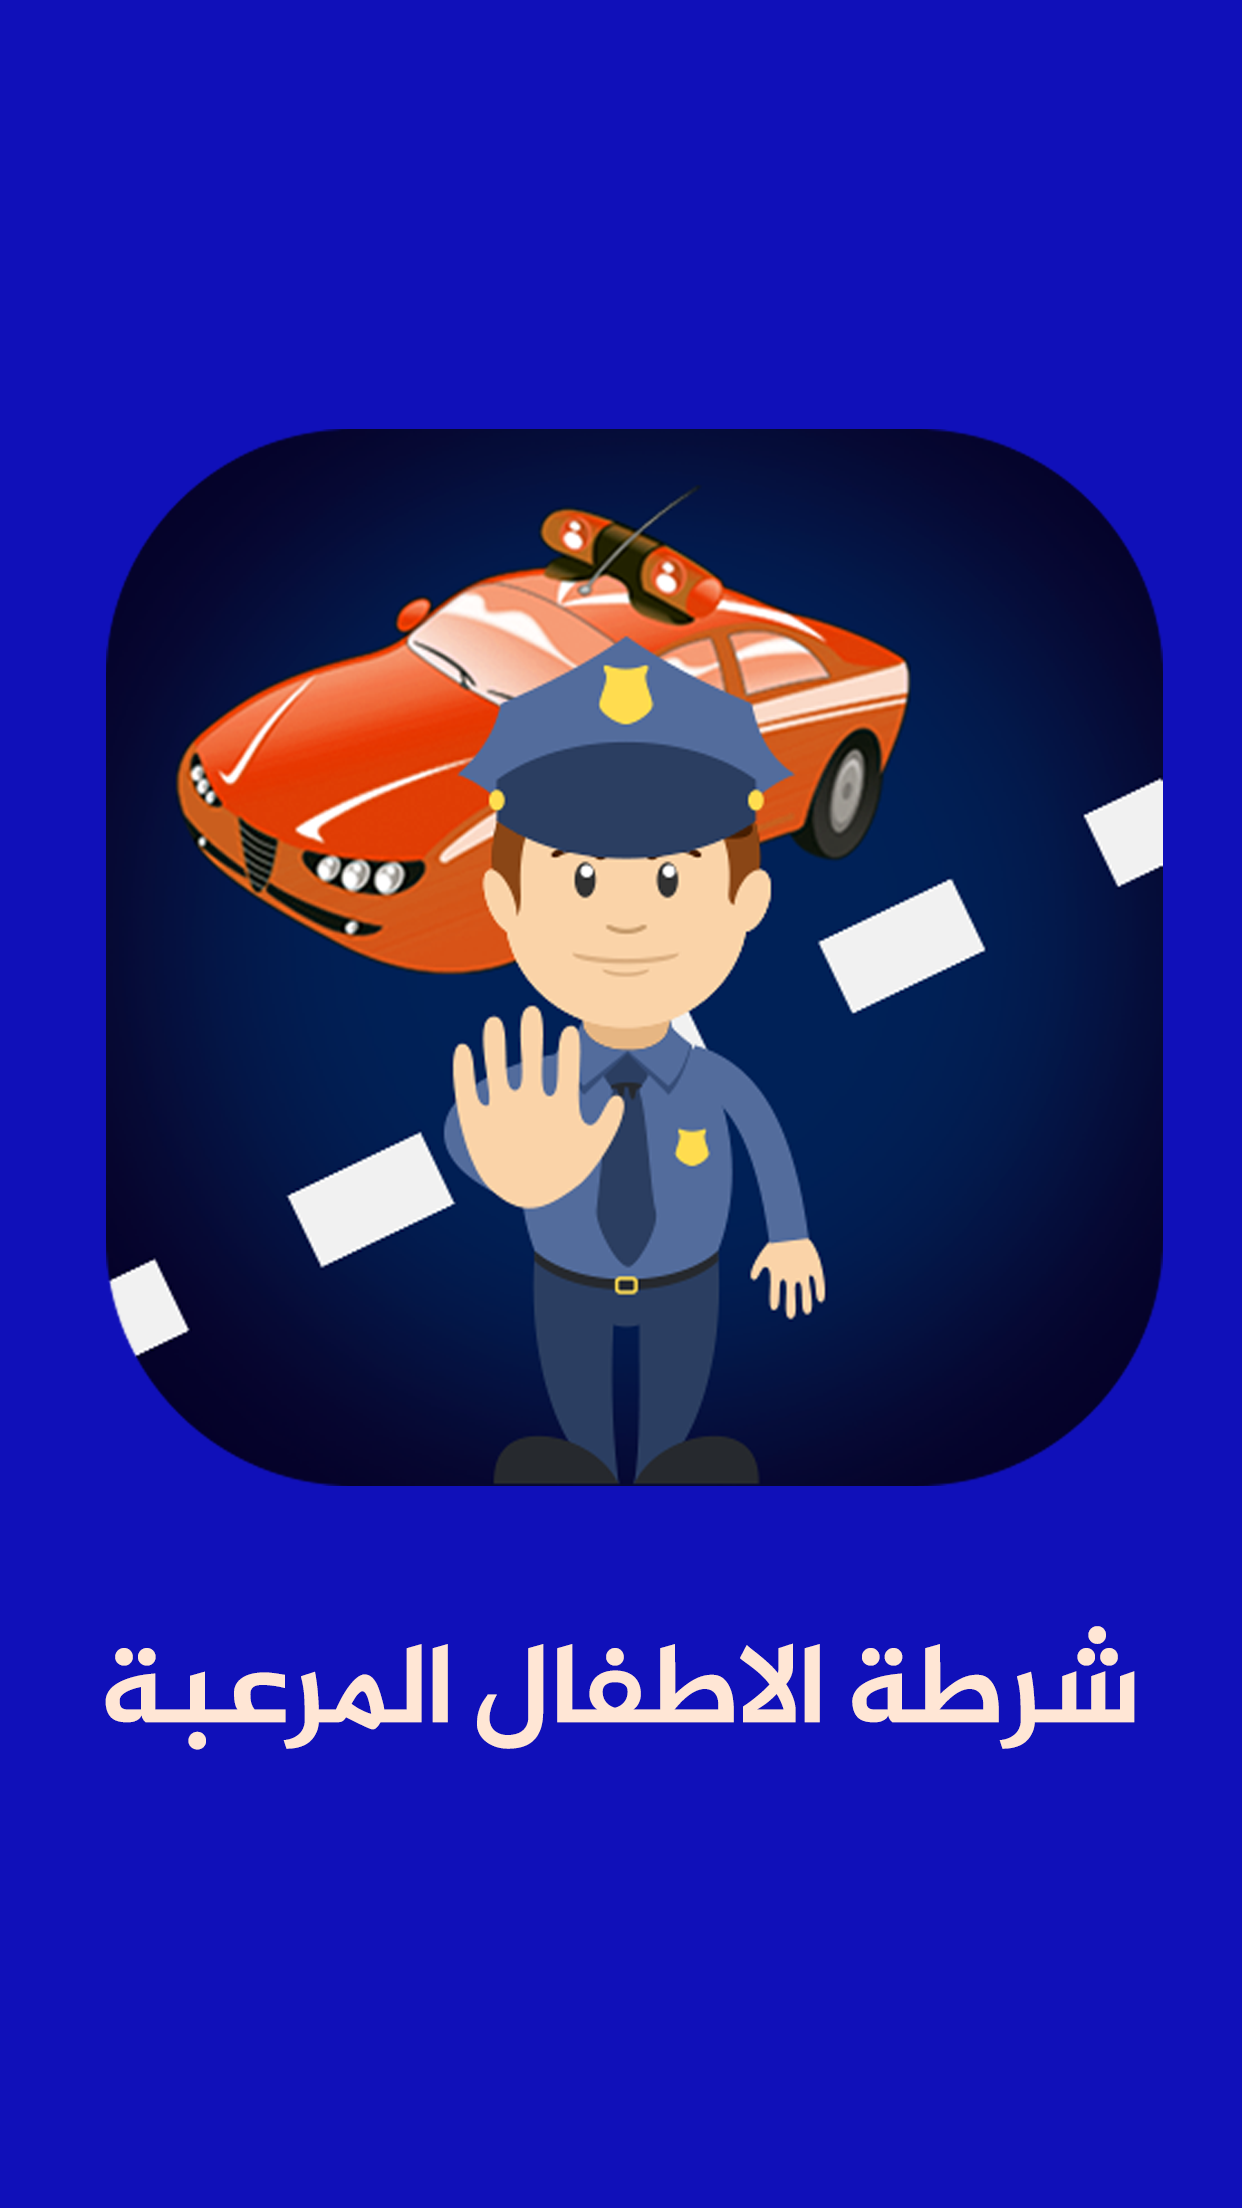 شرطة الاطفال المرعبة APK 1.1.3 for Android – Download شرطة الاطفال المرعبة  APK Latest Version from APKFab.com